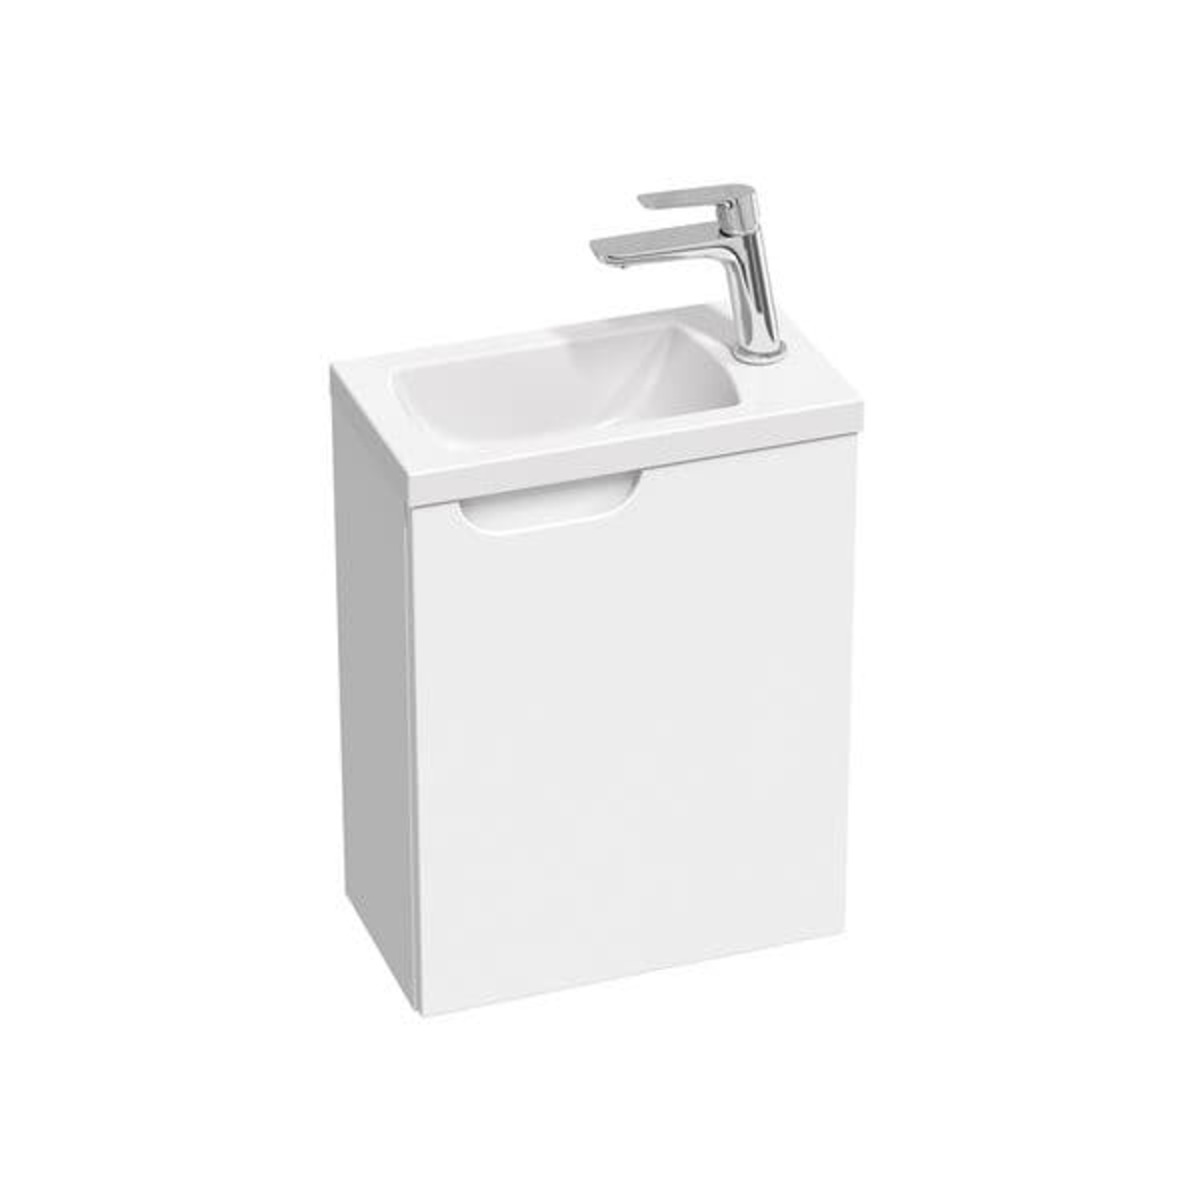 Koupelnová skříňka pod umyvadlo Ravak Classic II 40x50x22 cm bílá lesk X000001486 Ravak